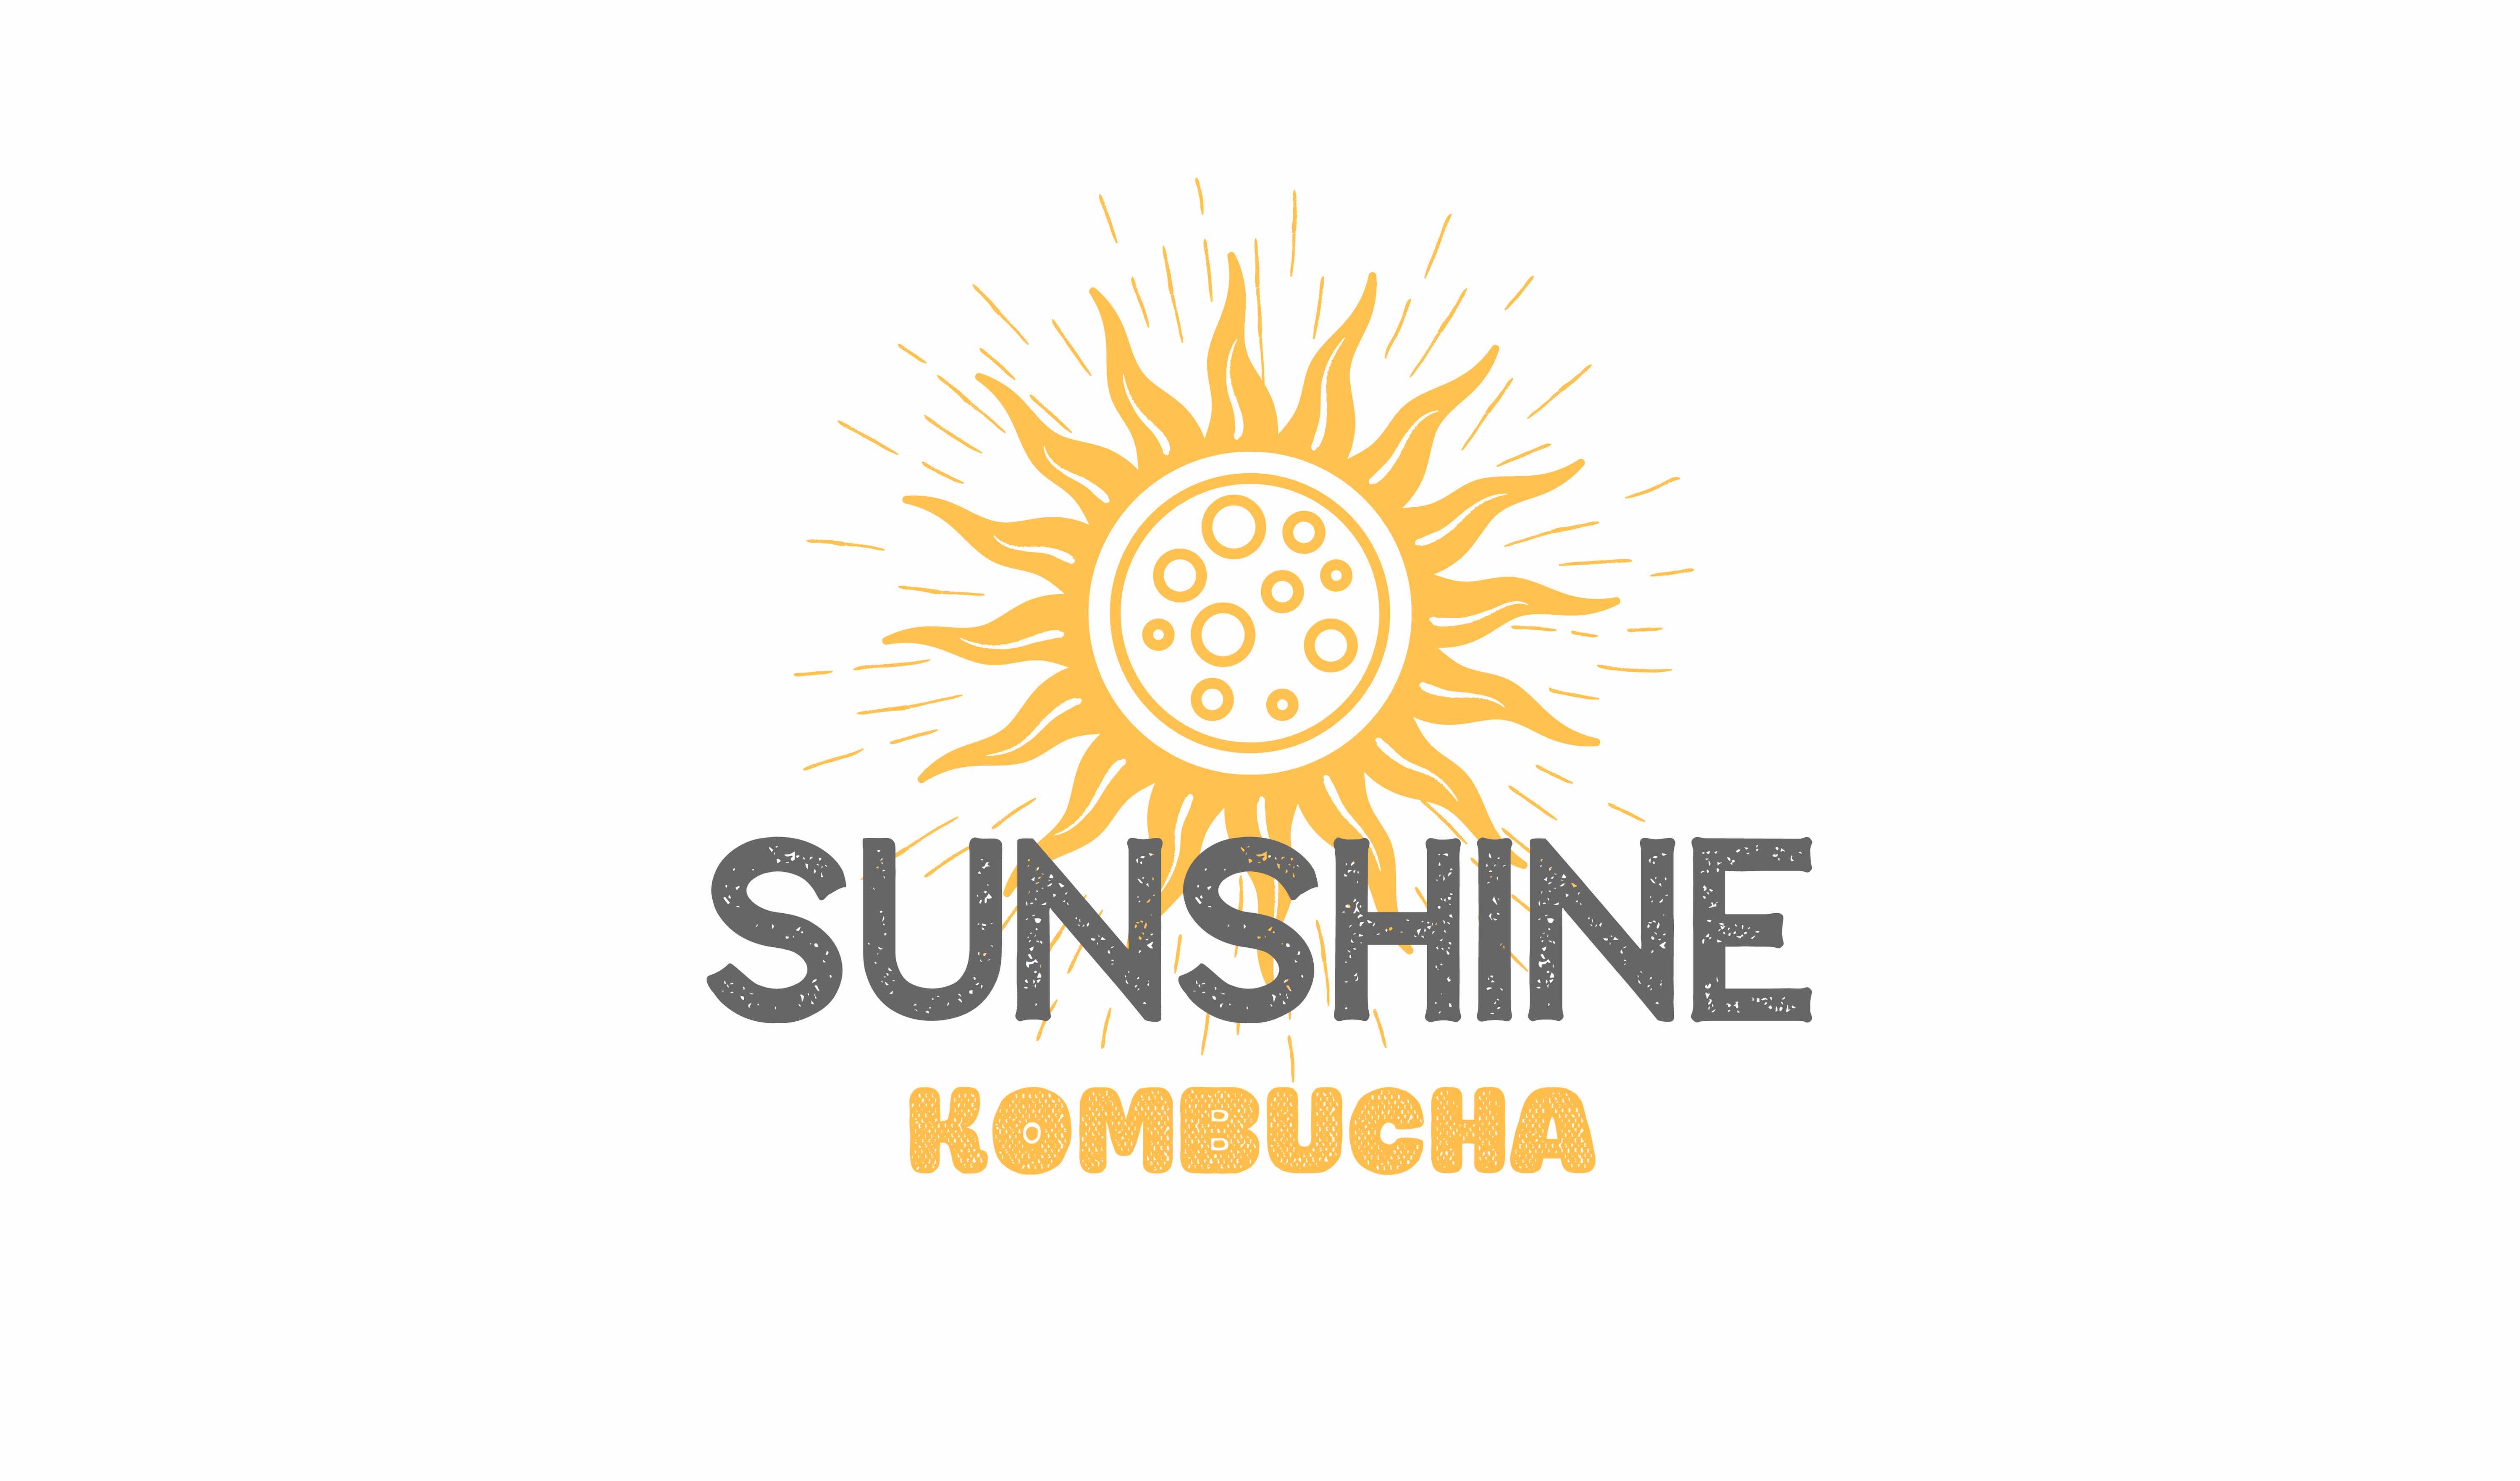 Sunshine Kombucha